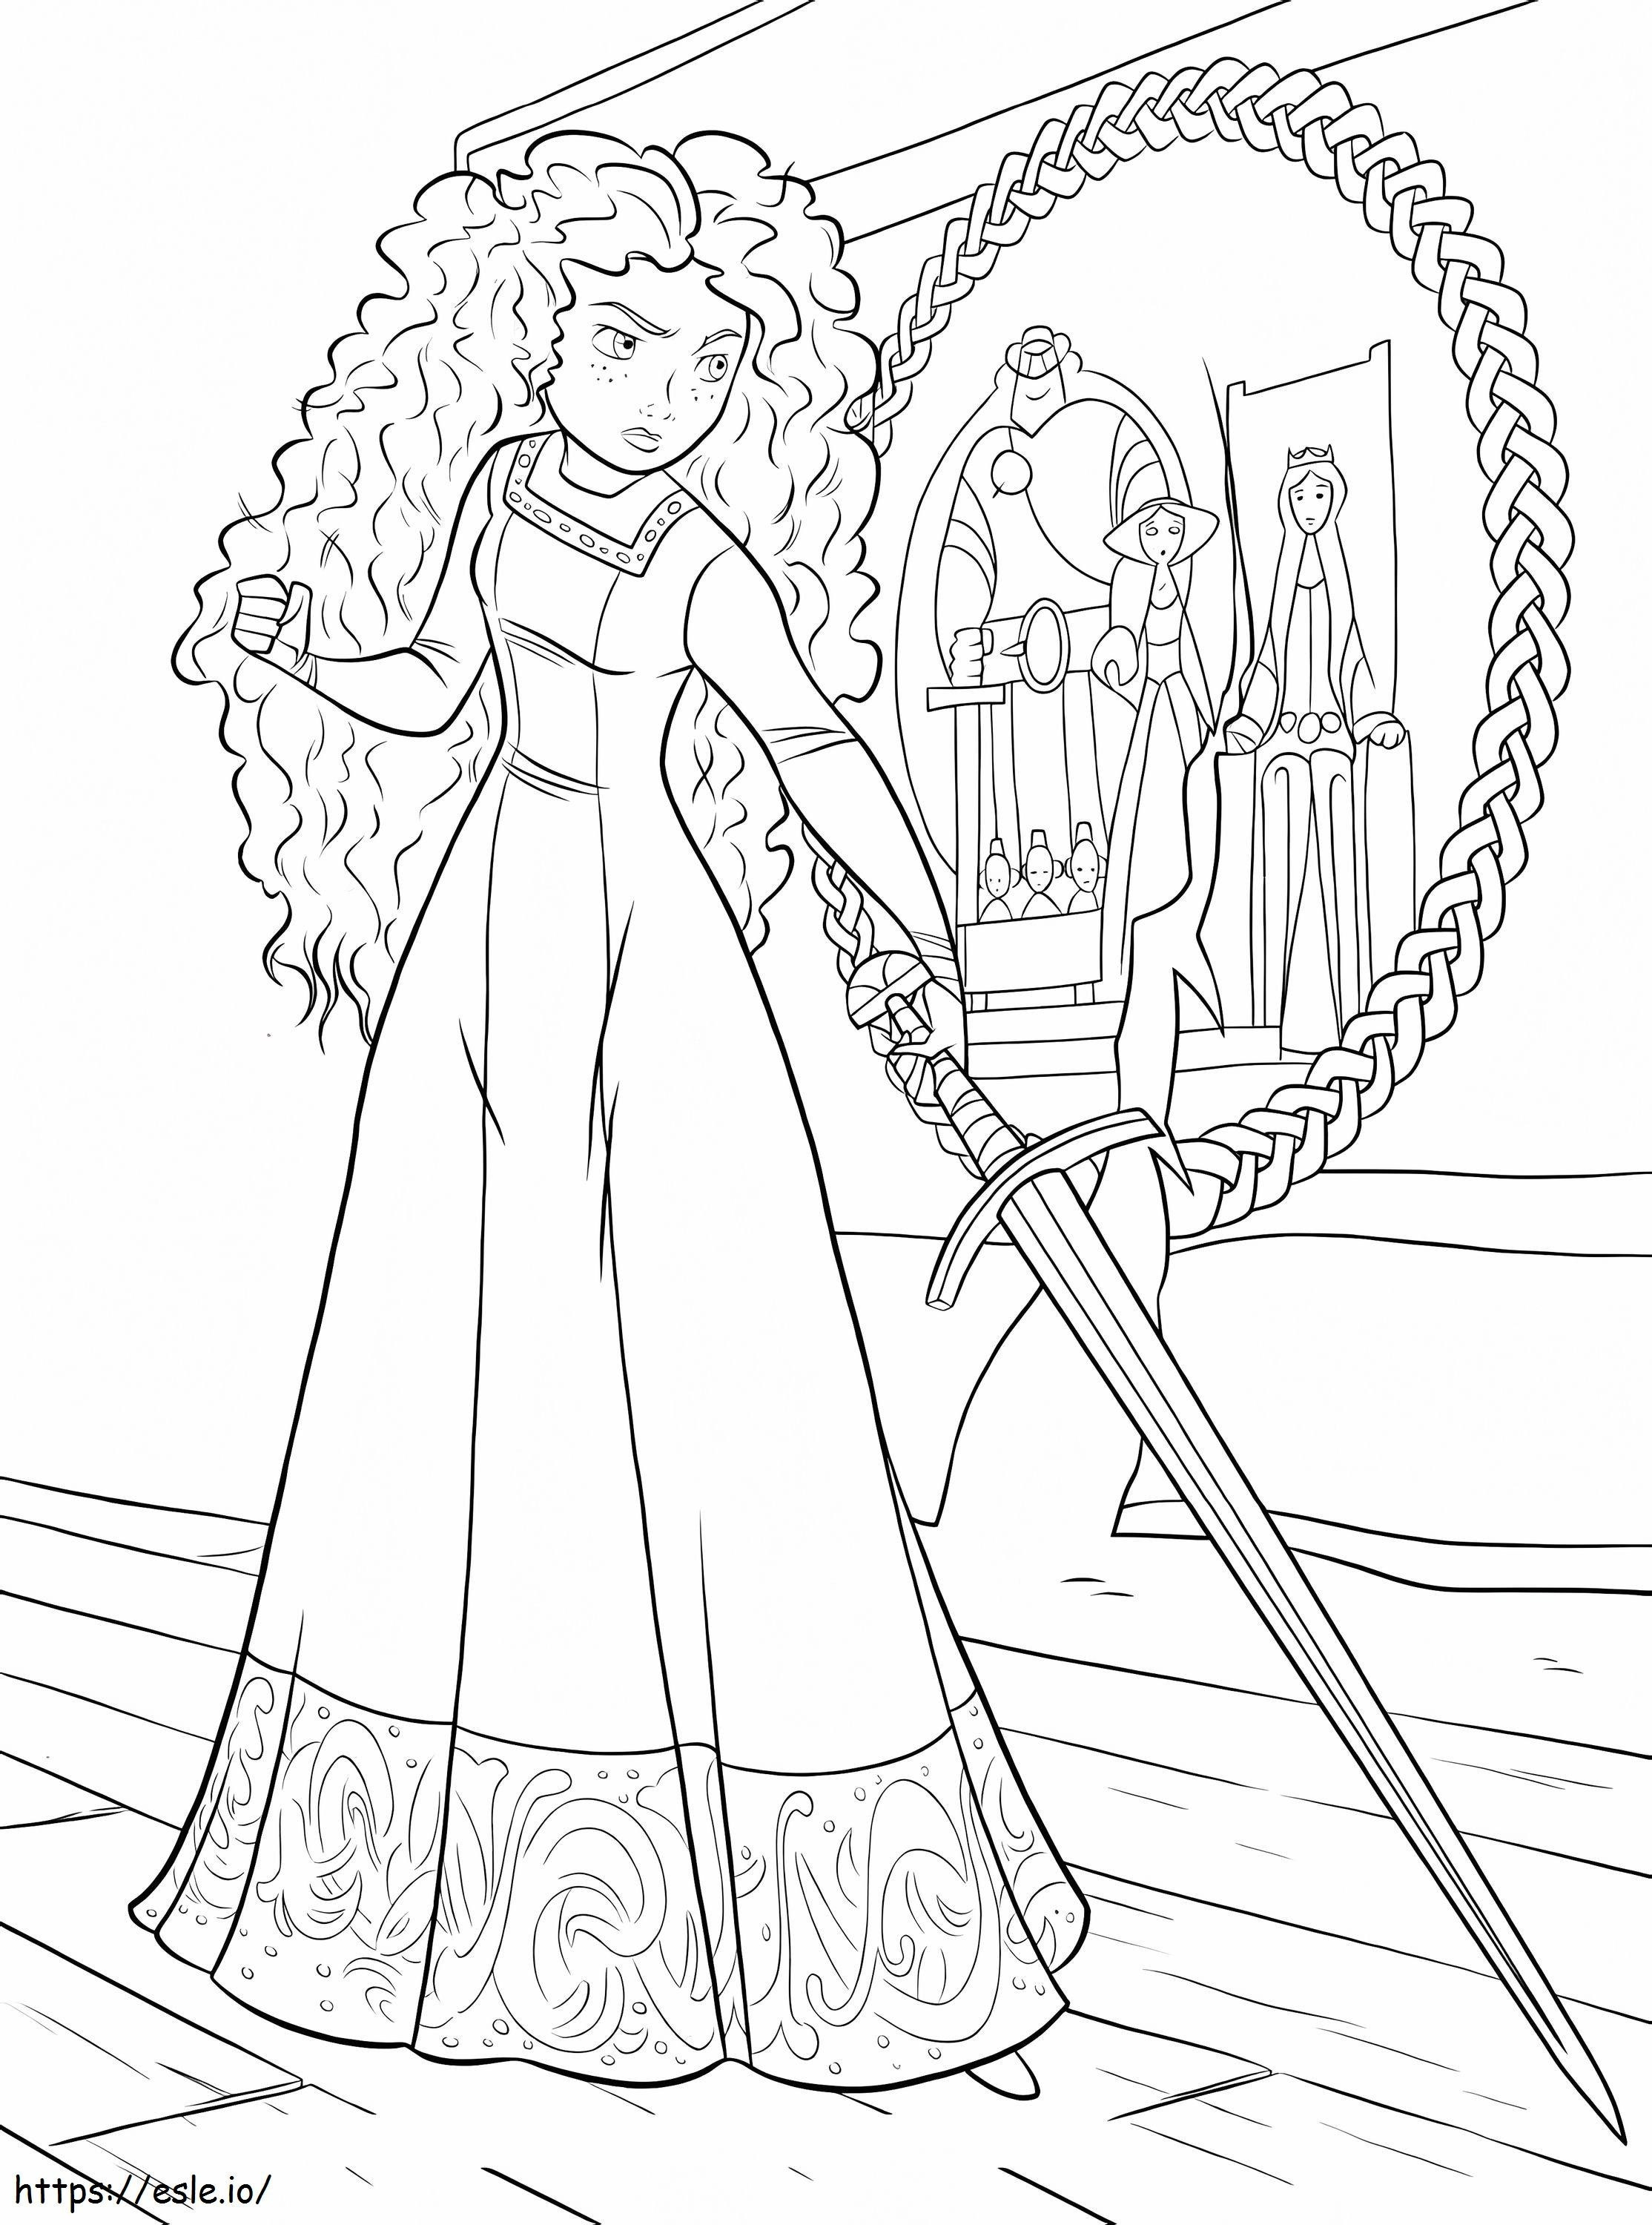 Principessa Merida con la spada da colorare